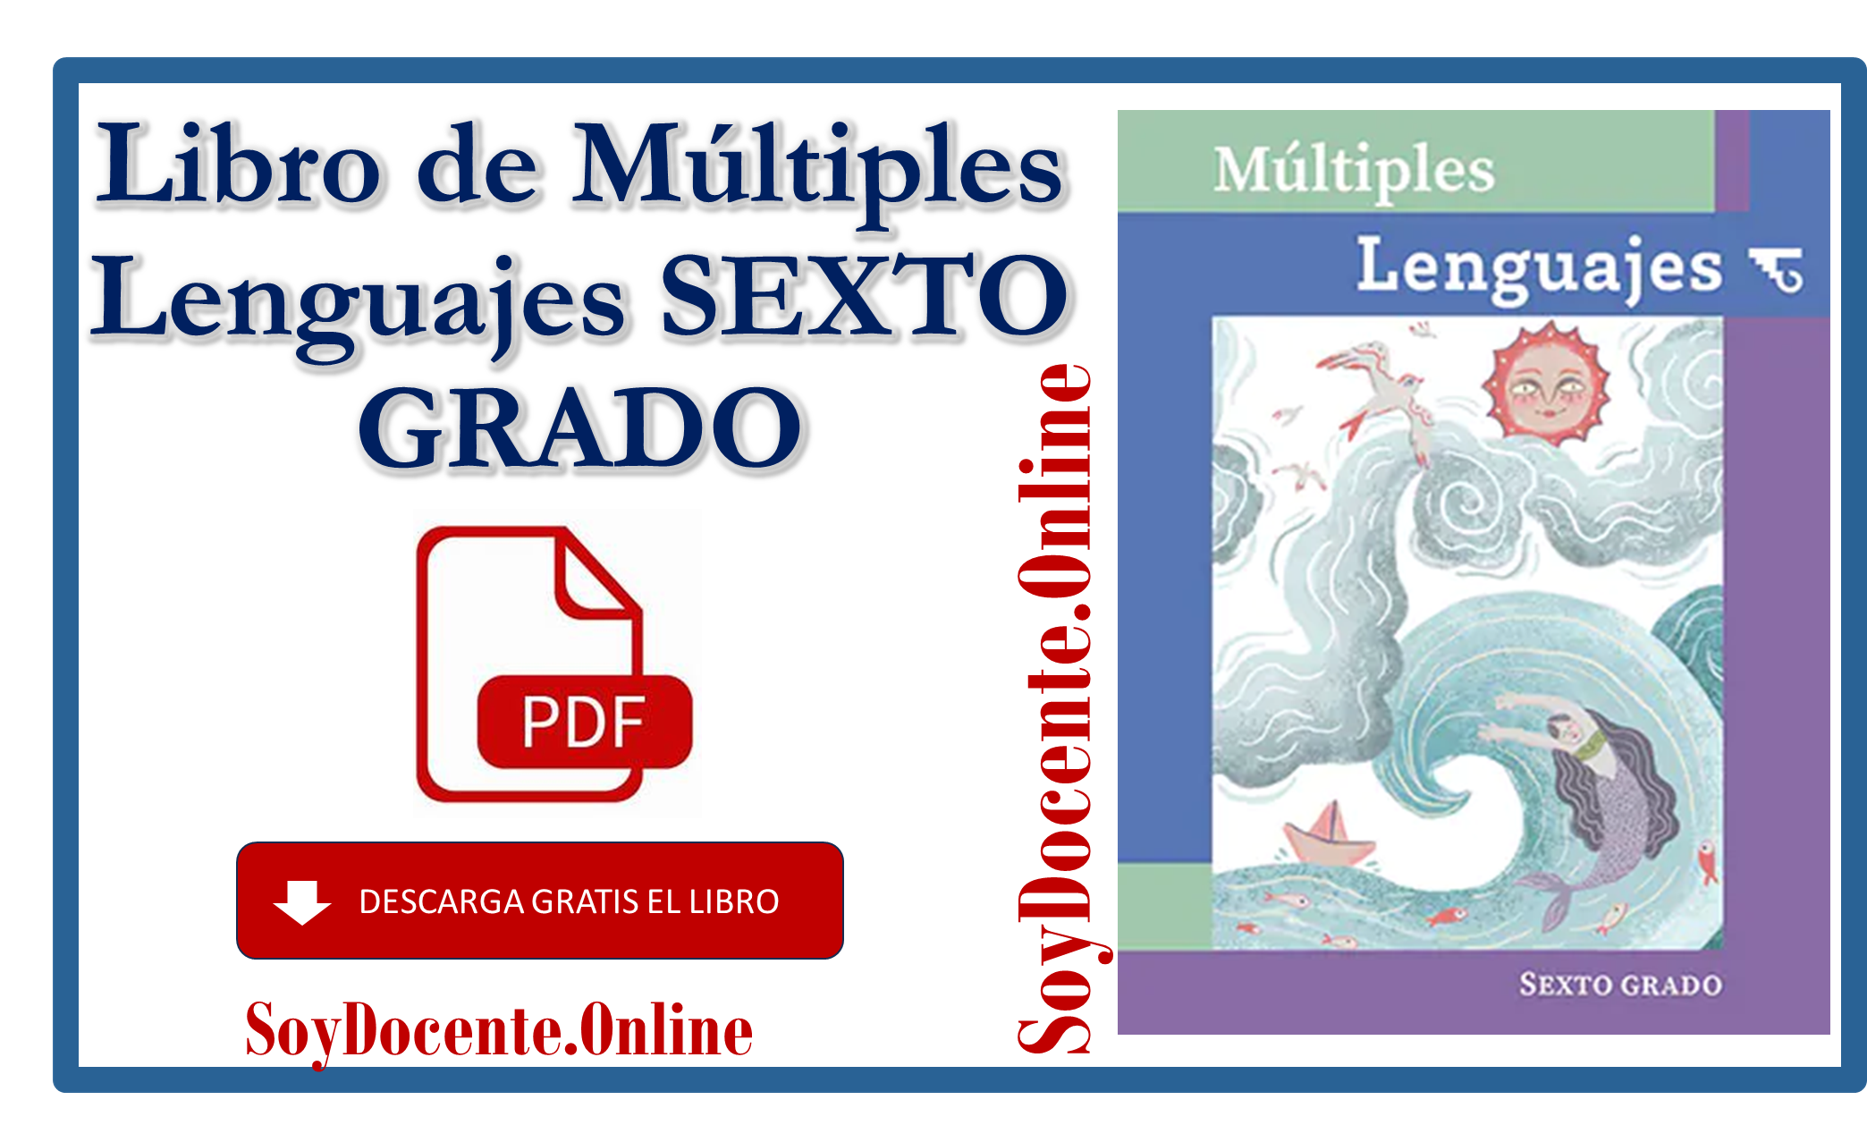 Descarga en PDF el Libro de Múltiples lenguajes sexto grado de Primaria obra de la SEP, distribuido por la CONALITEG.